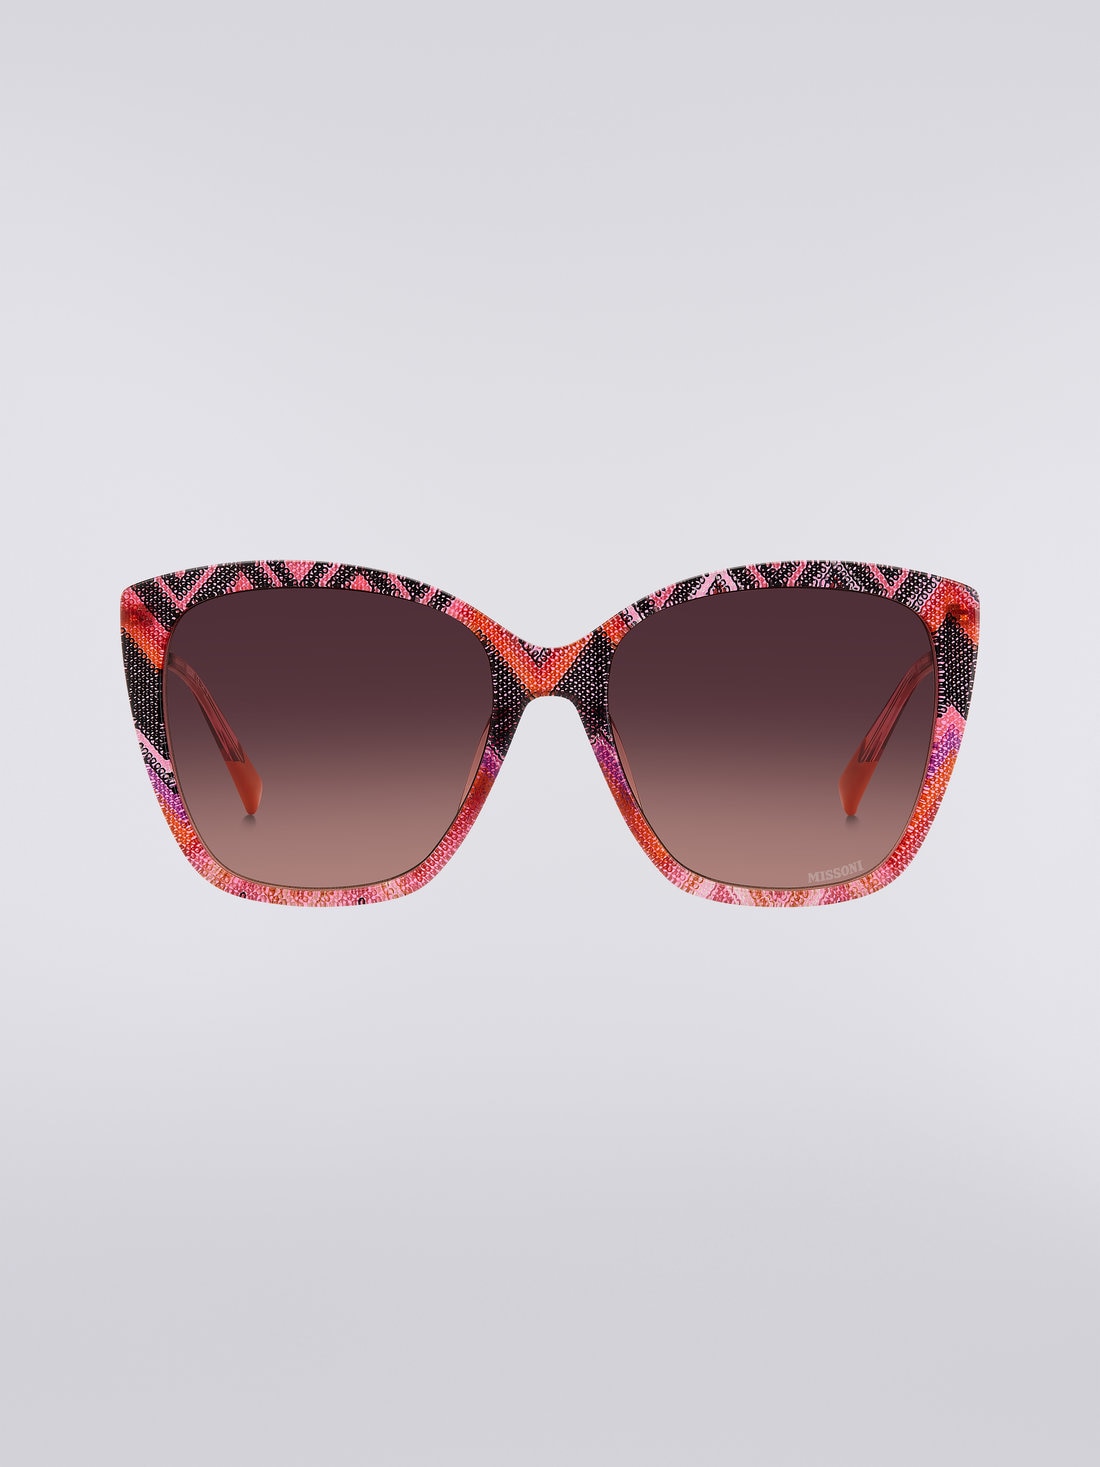 Missoni Dna Acetate Sunglasses, Multicoloured  - 8051575840234 - 0